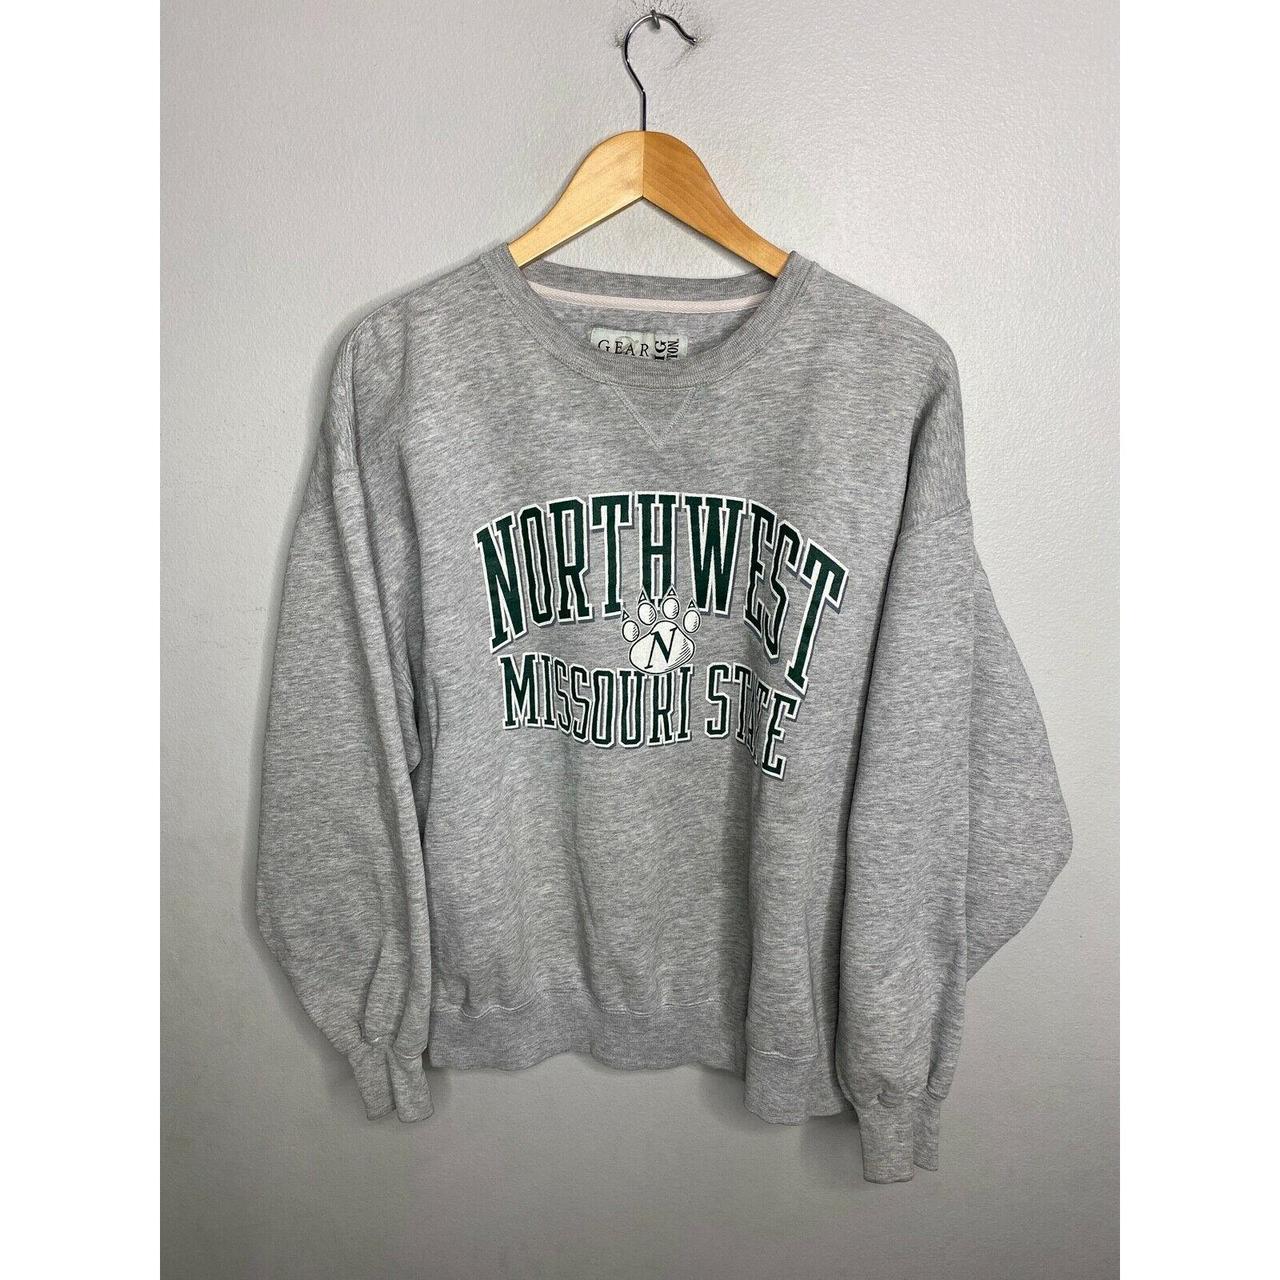 Product Image 1 - Vintage NCAA Northwest Missouri State